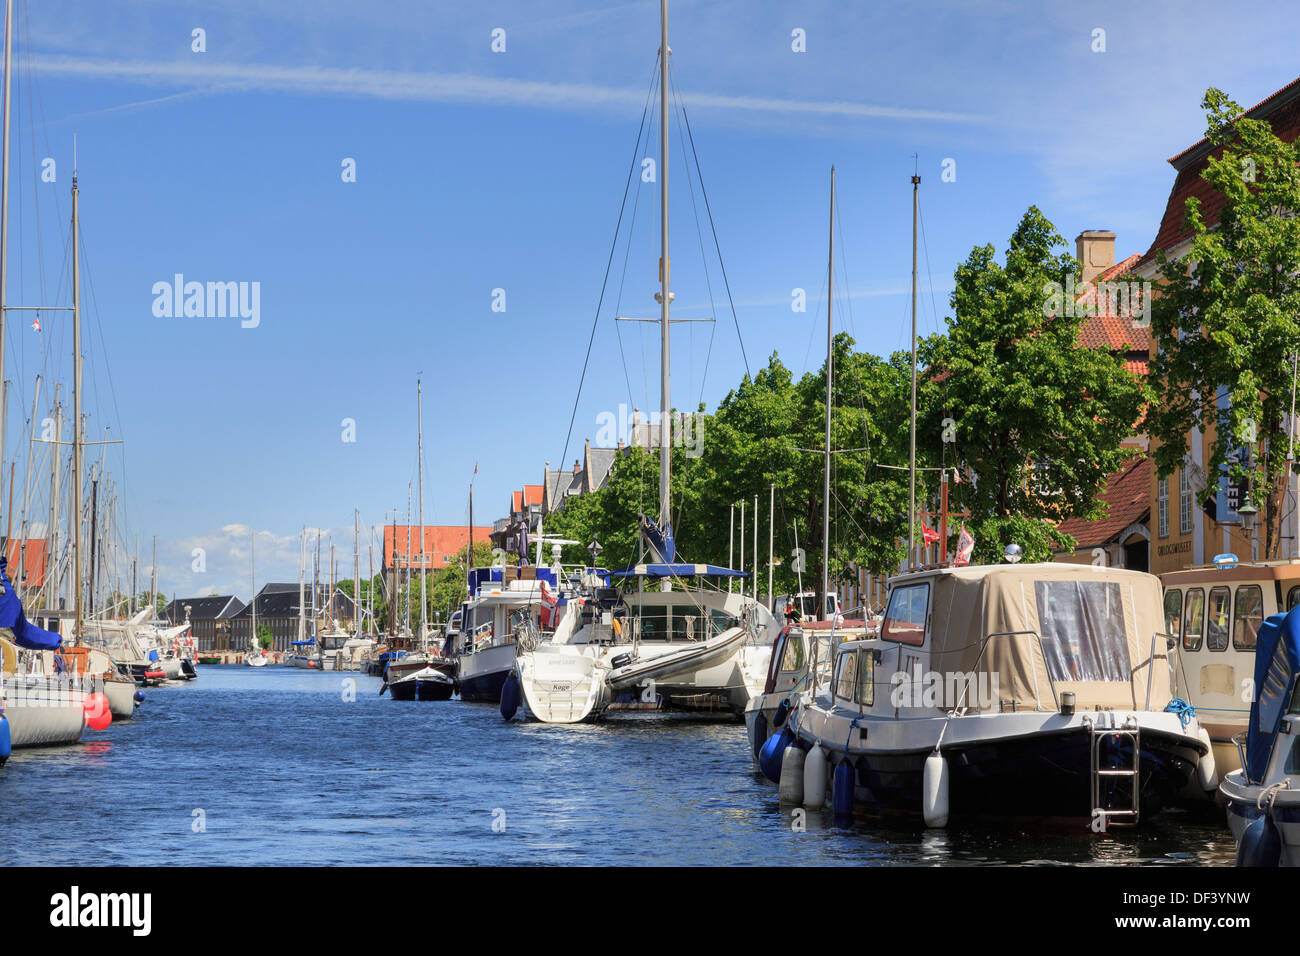 Festgemacht, Yachten, Boote und liegt auf Christianshavns Kanal, Overgaden, Christianshavn, Kopenhagen, Seeland, Dänemark Stockfoto